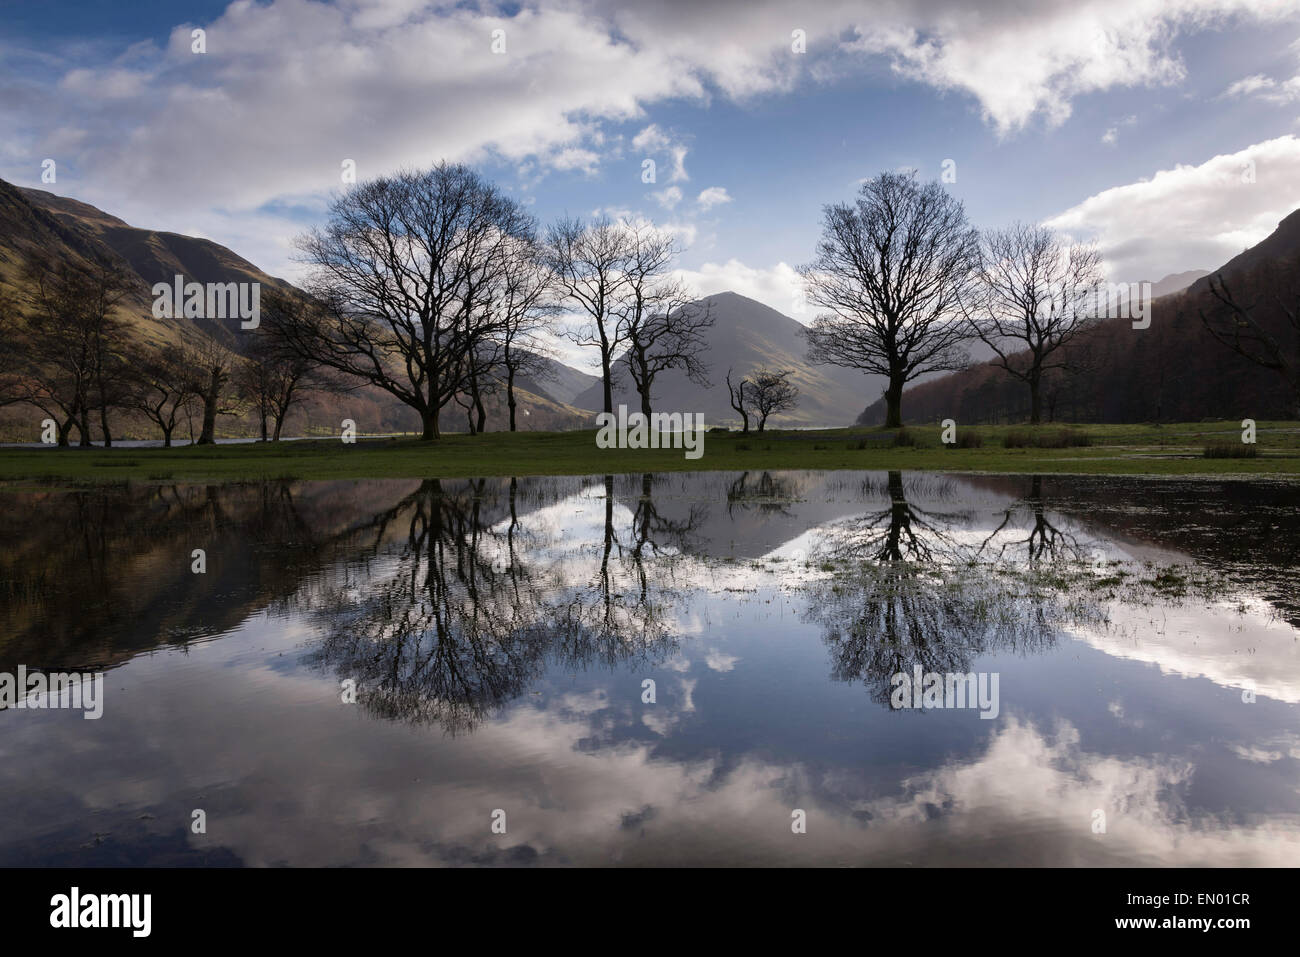 Reflets de l'arbre, Buttermere, Lake District, Angleterre Banque D'Images